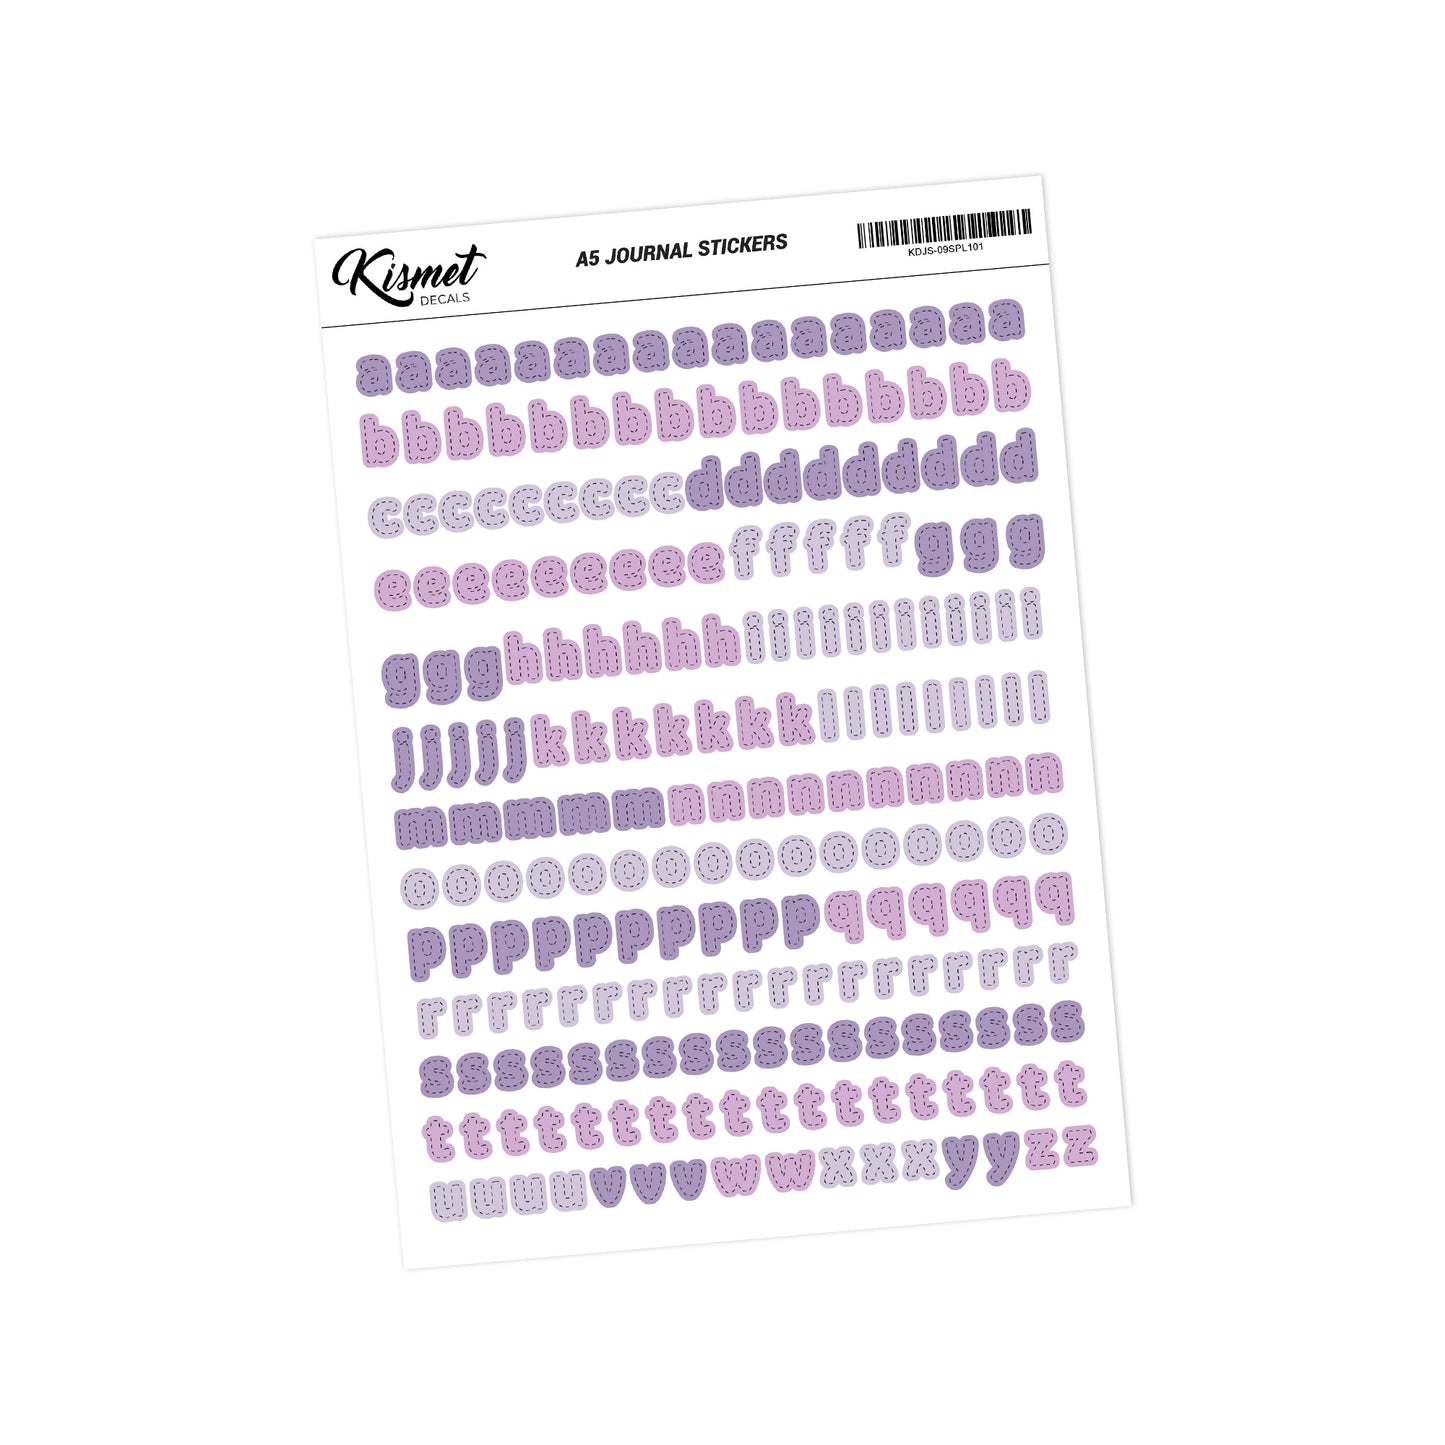 A5 Small Alphabets Journal Stickers - 5.3" X 8.3" - Craft Scrapbook Junk Journal Snail Mail Planner Journal Diary Paper Sticker Sheet